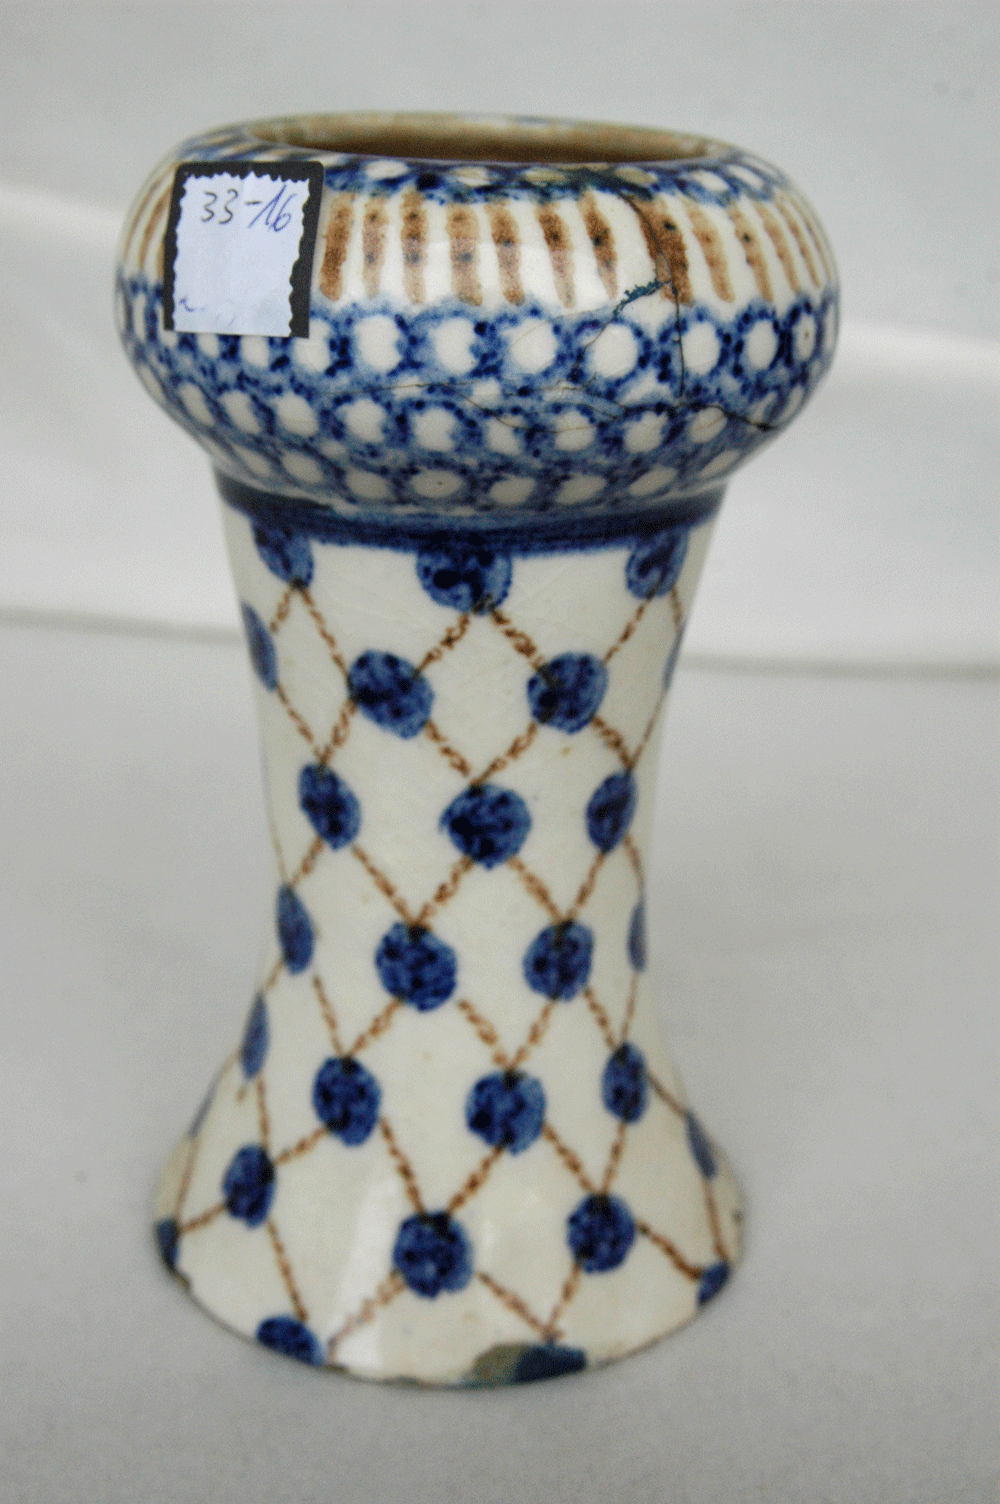 Vase, Bunzlau, heller Grund mit blauen Tupfen, h= 17 cm, geklebt